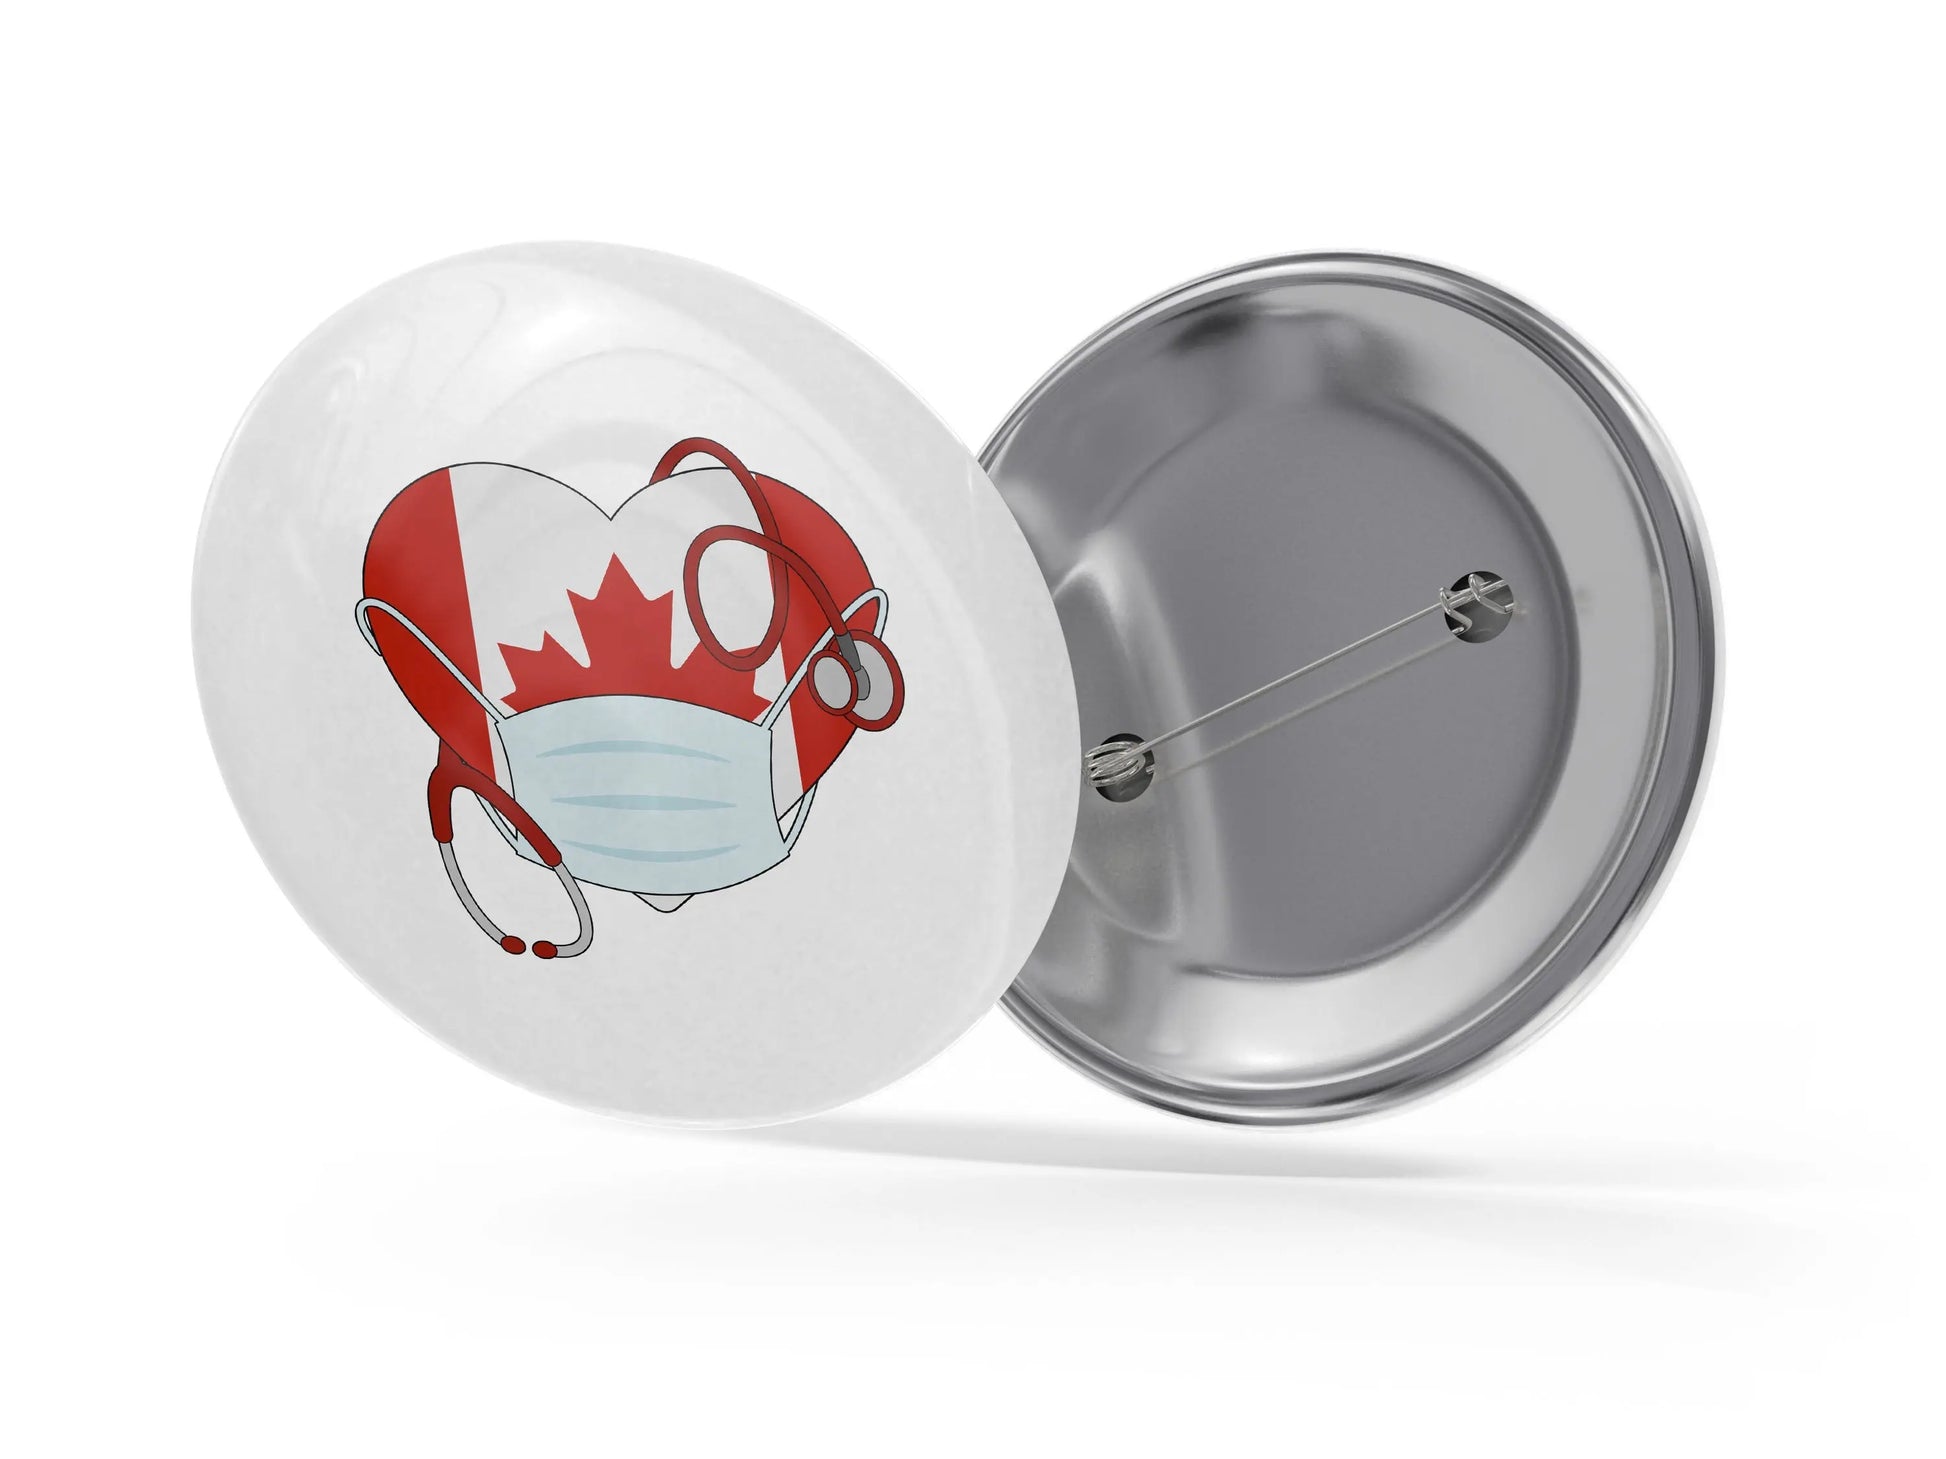 Canada Health Medical Staff Button Pins - Nurse Doctor Respiratory Technician Gift Ideas - 10 pieces - Busybee Creates